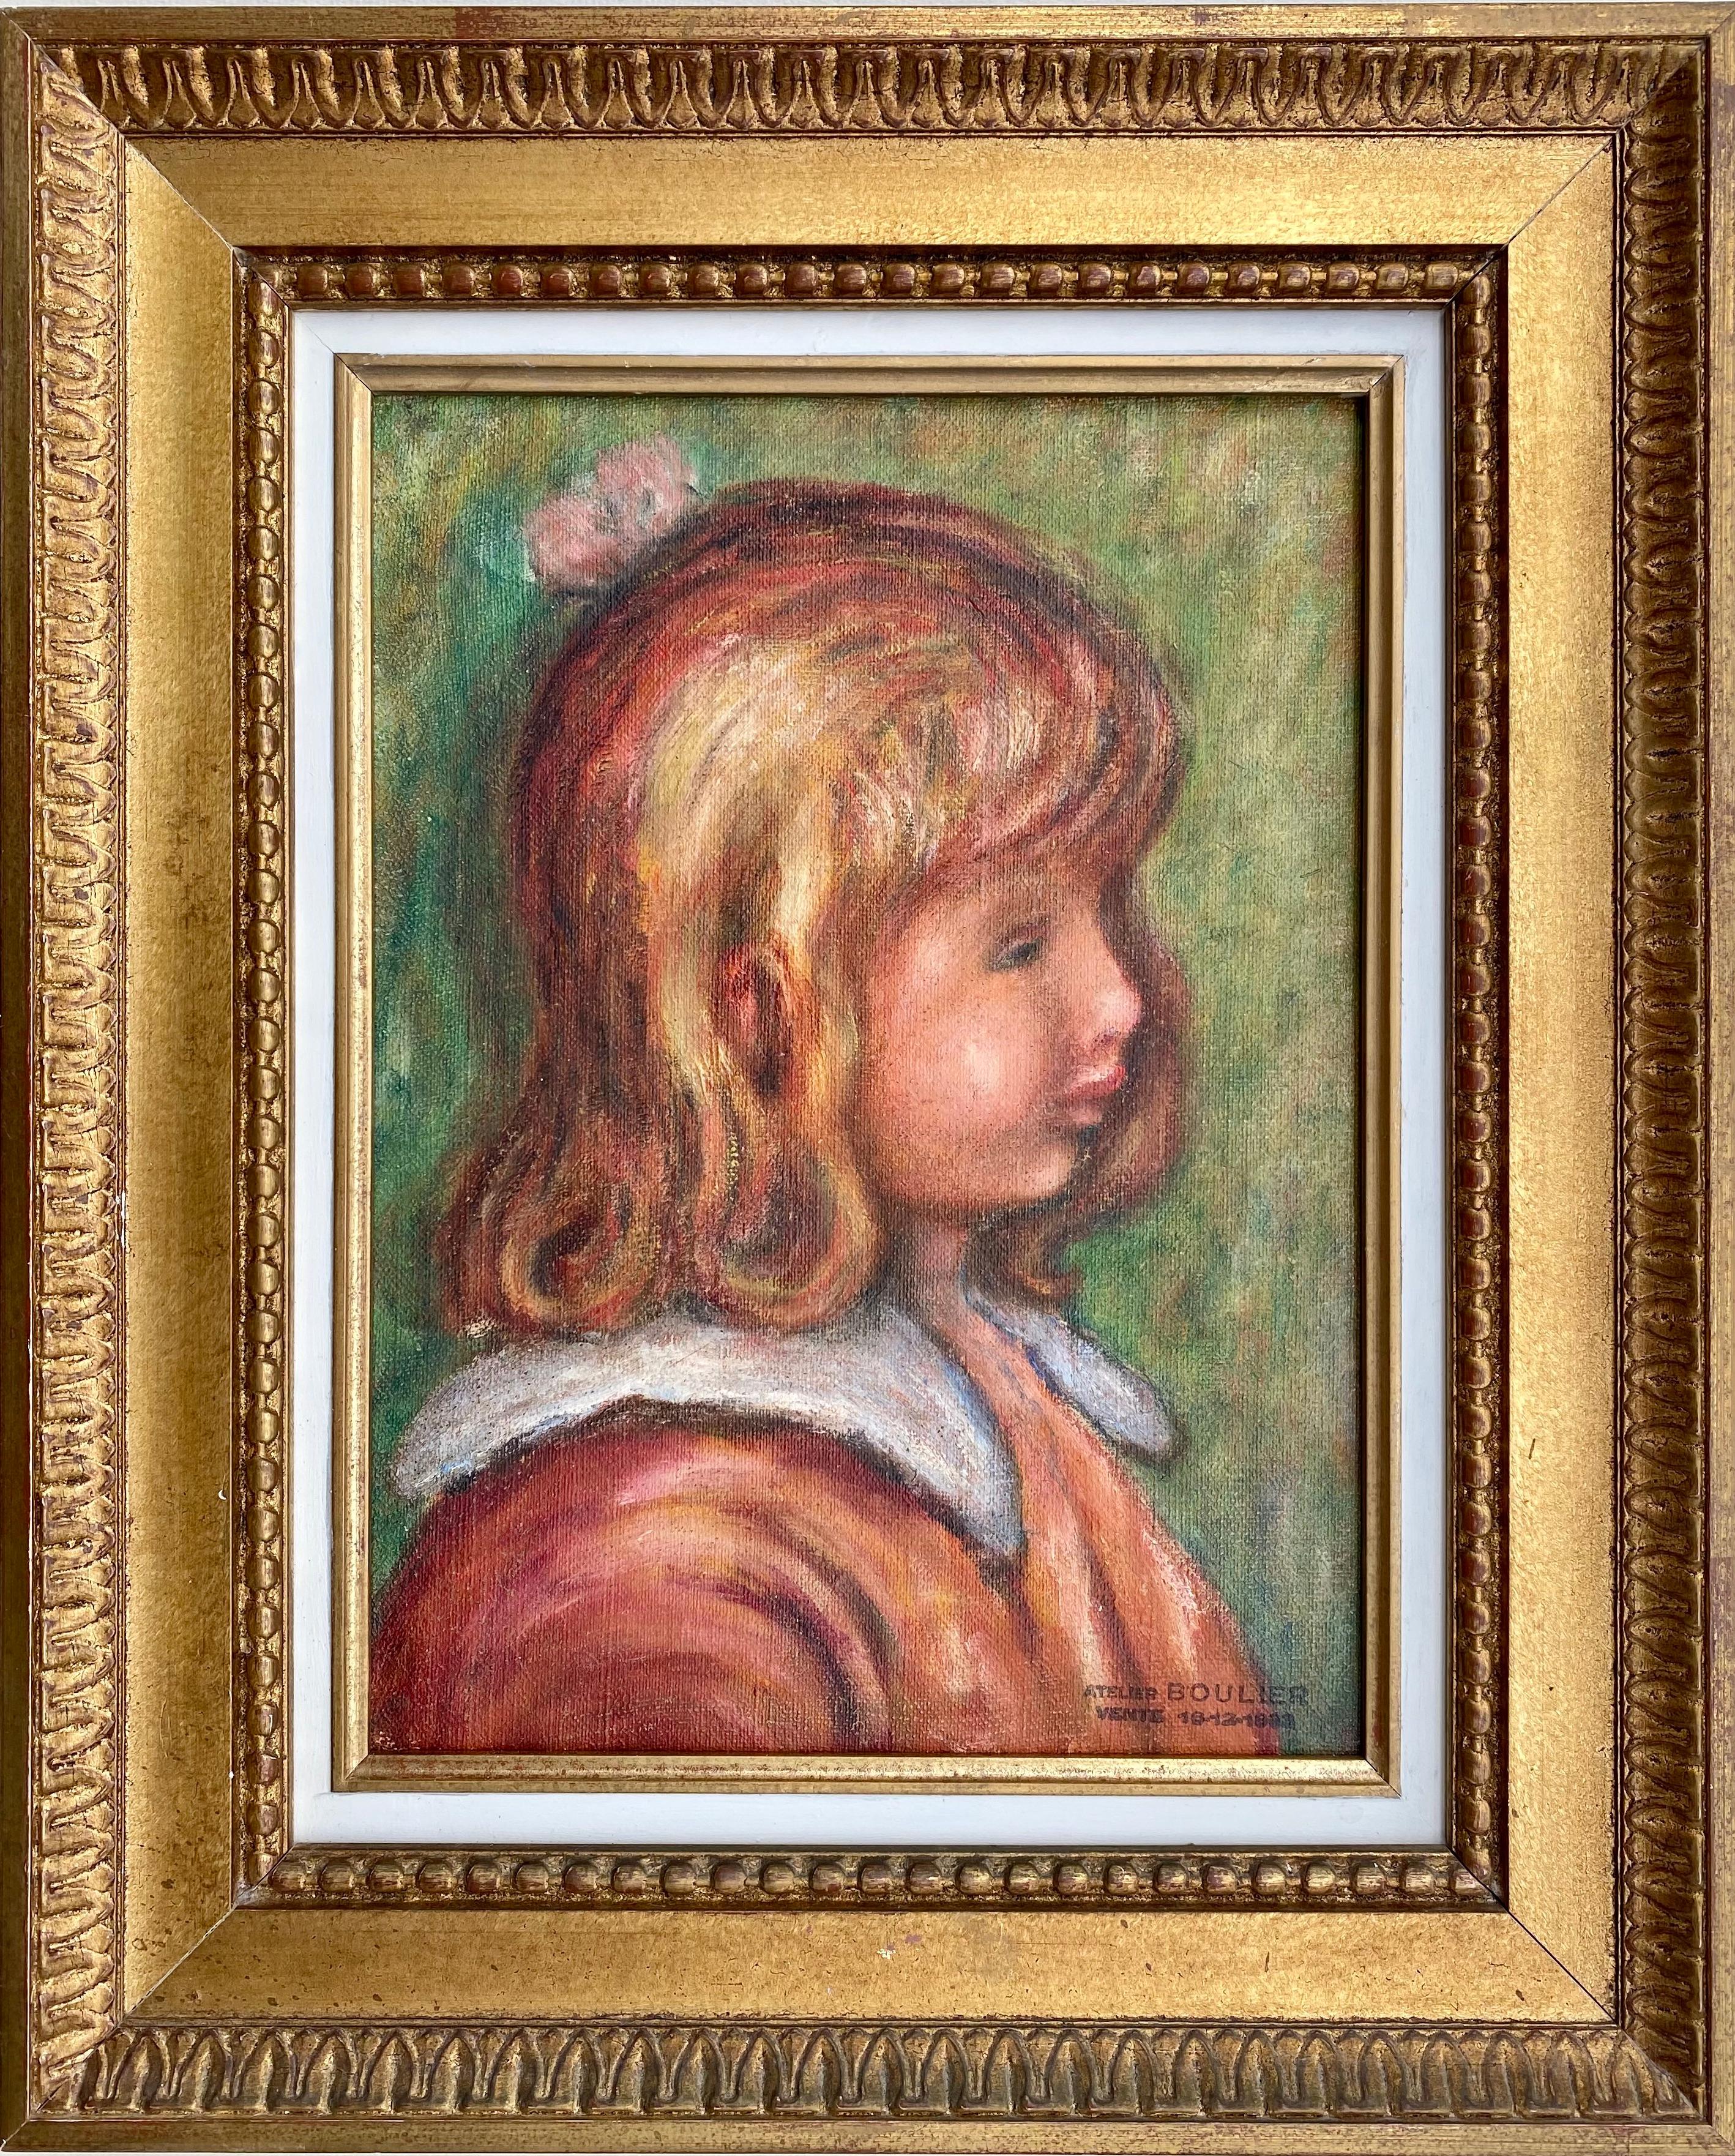 Auguste Renoir"s last student: portrait of Renoir"s son painting